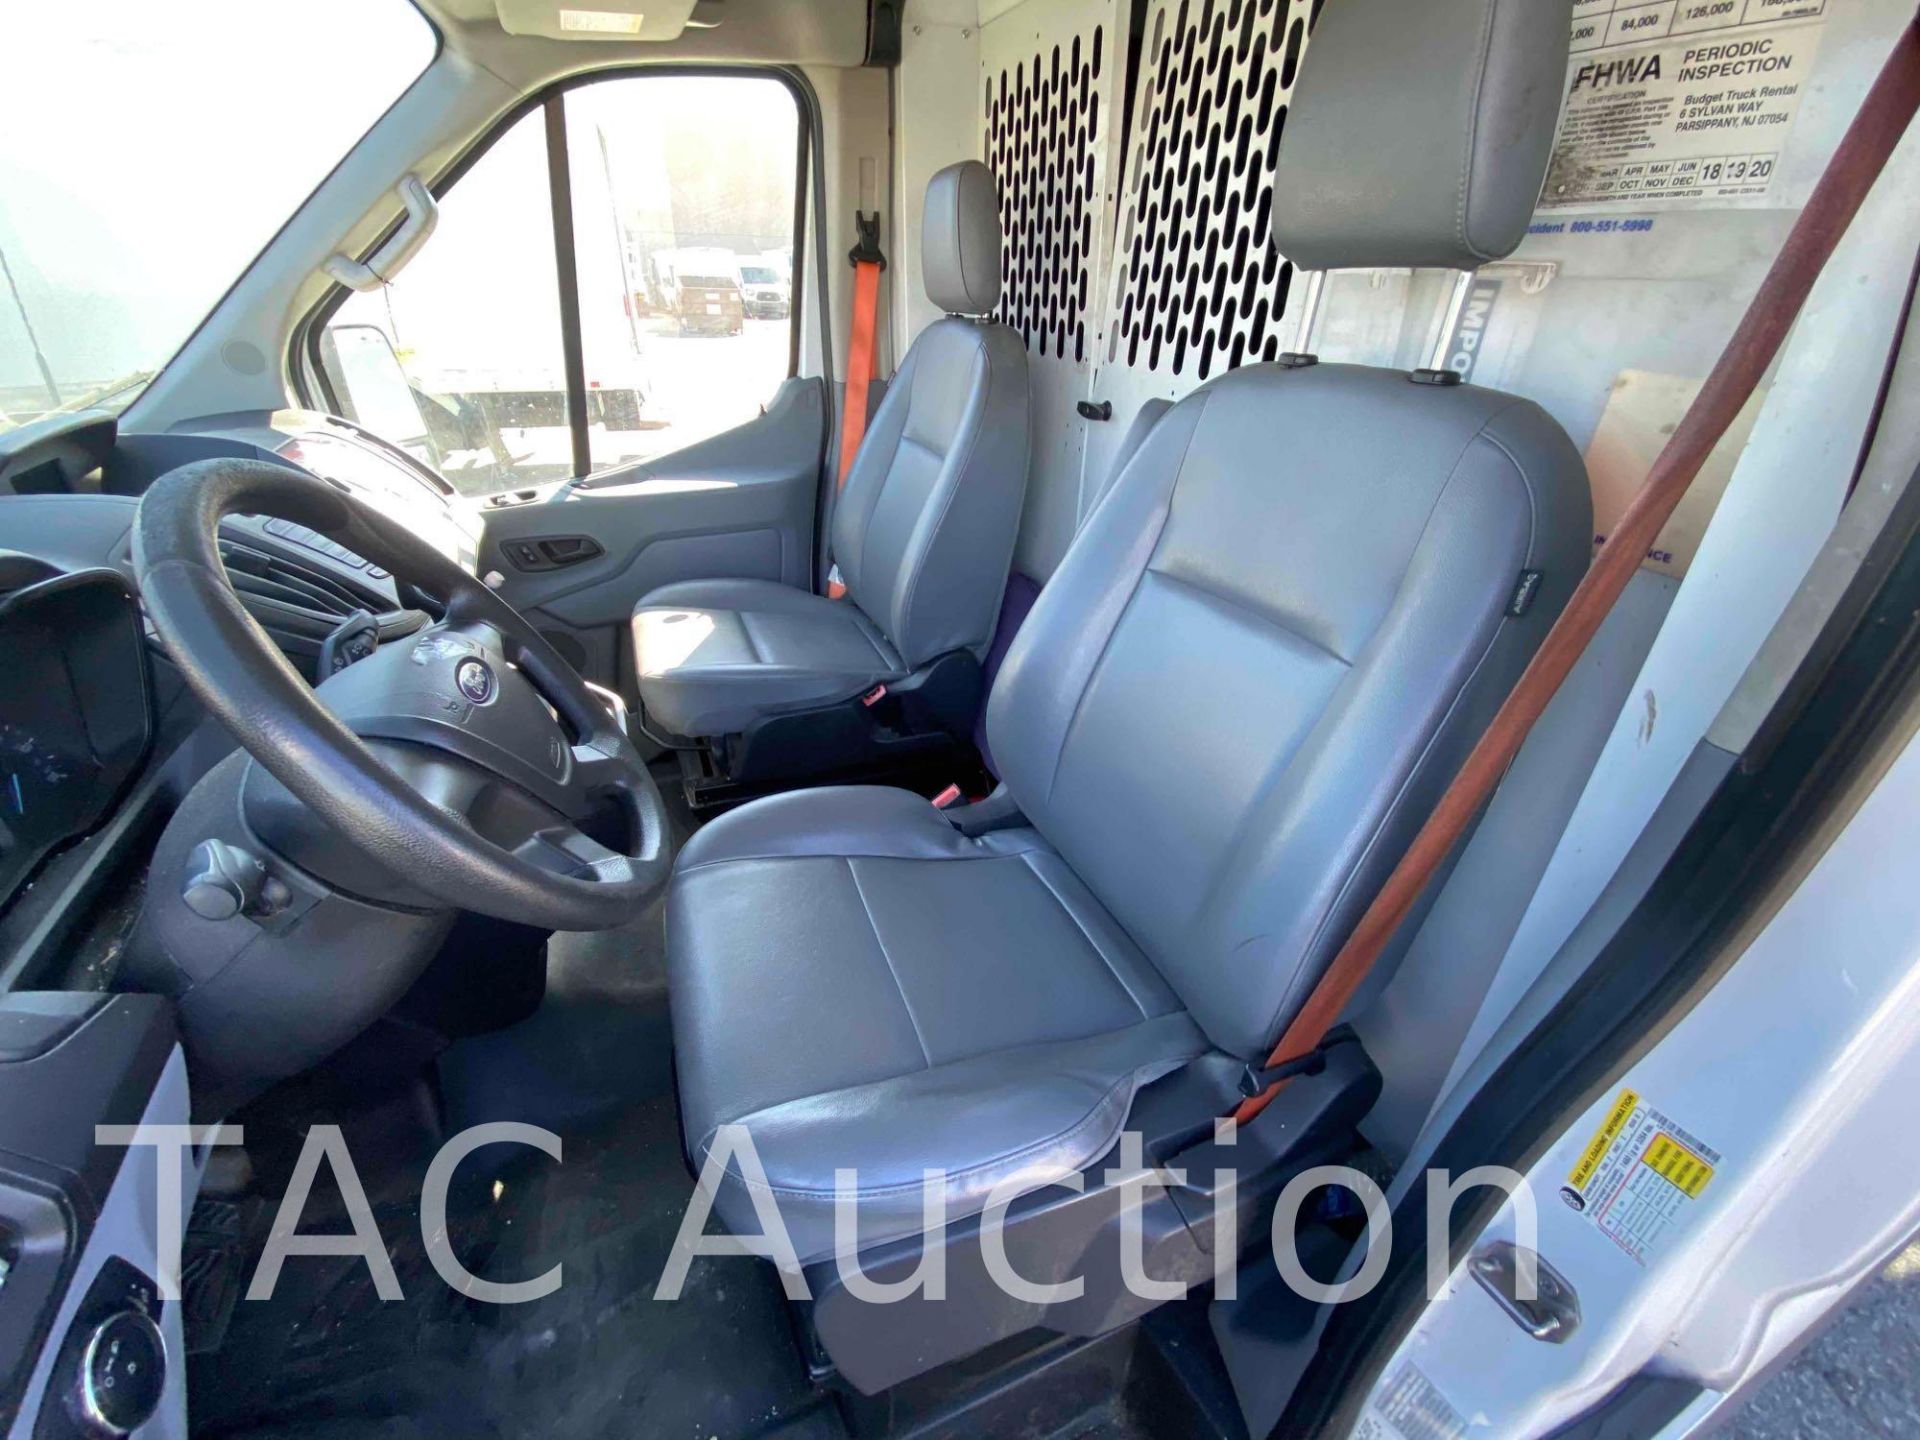 2019 Ford Transit 150 Cargo Van - Image 18 of 39